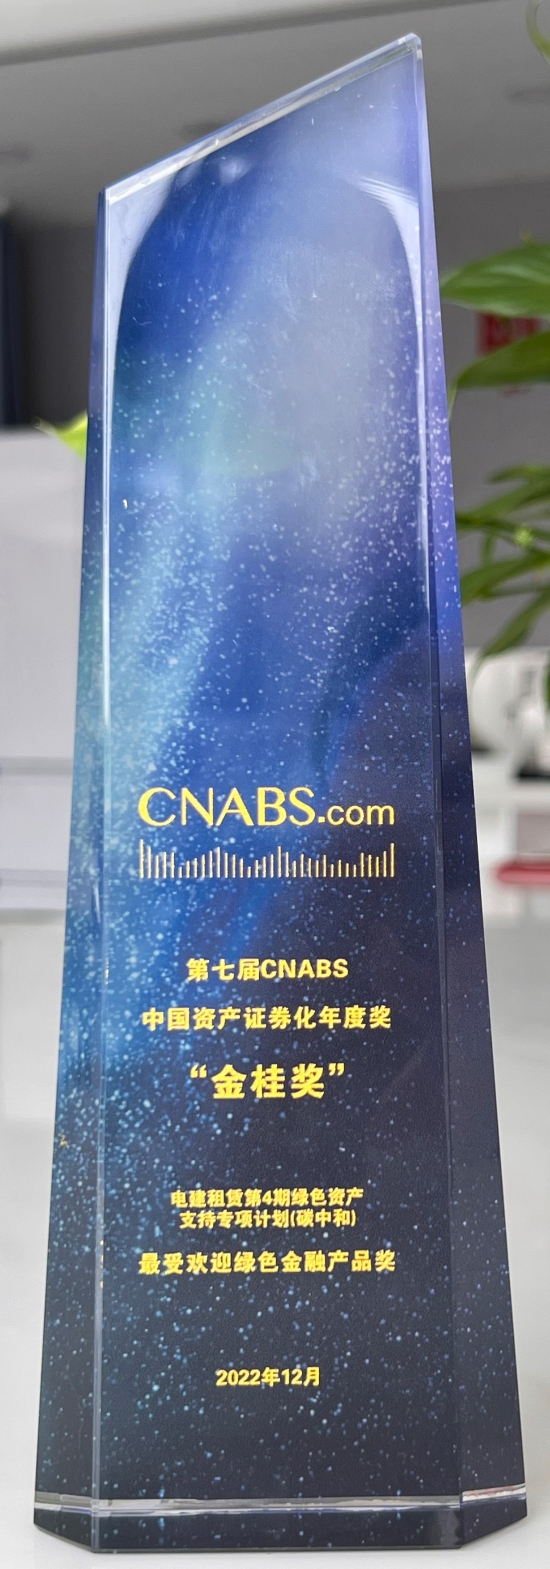 第七届CNABS金桂奖——最受欢迎绿色金融产品奖